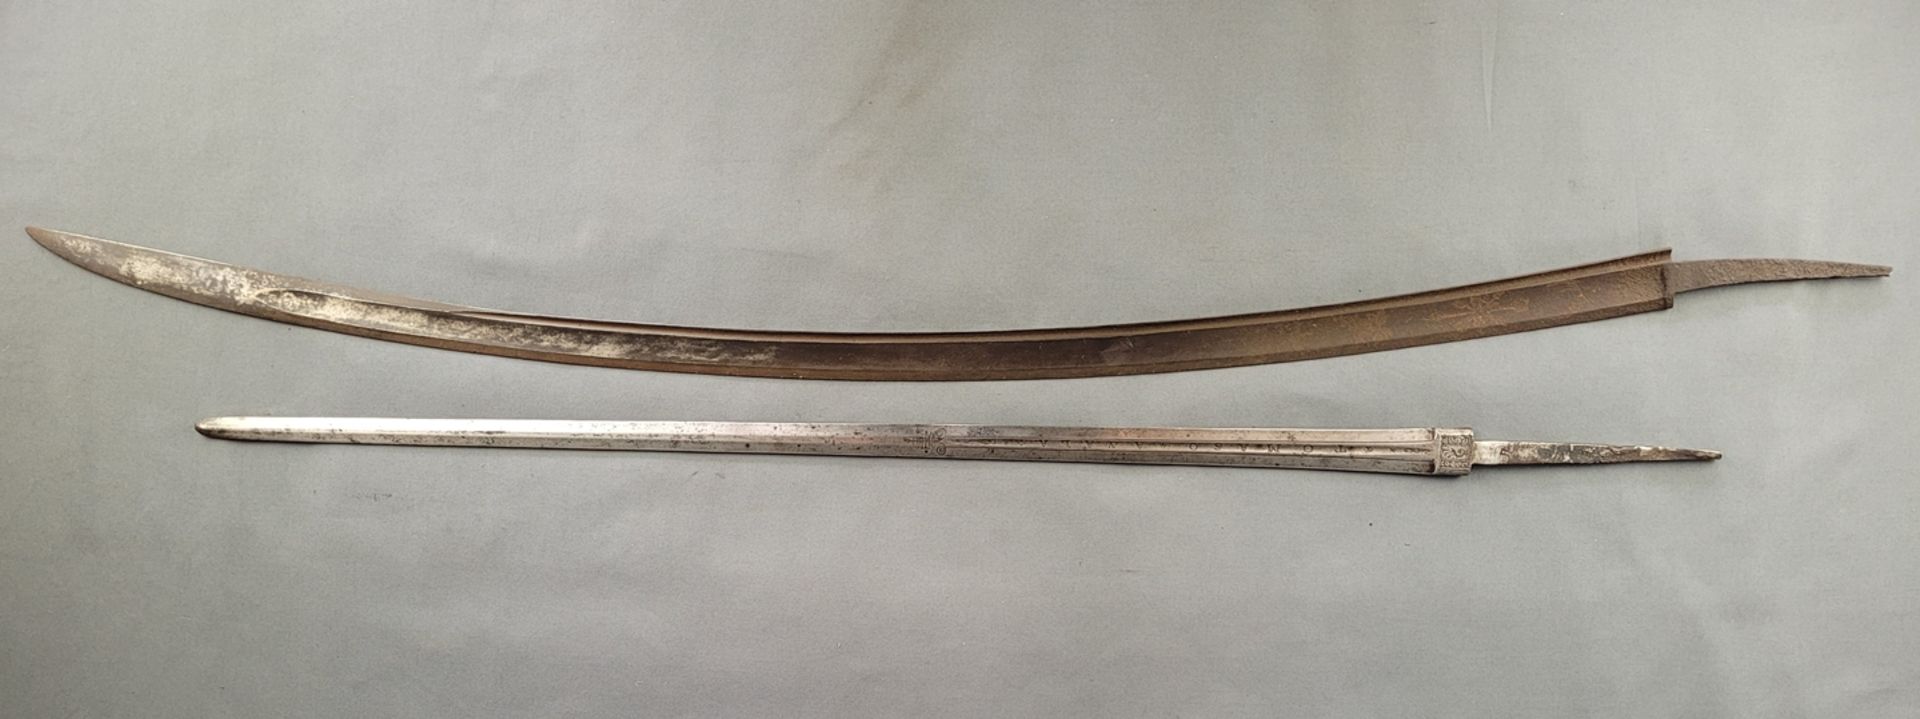 Zwei Schwertklingen, eine geschwungen, einschneidig, ziseliert mit floralem Dekor, L 97 cm, Flugros